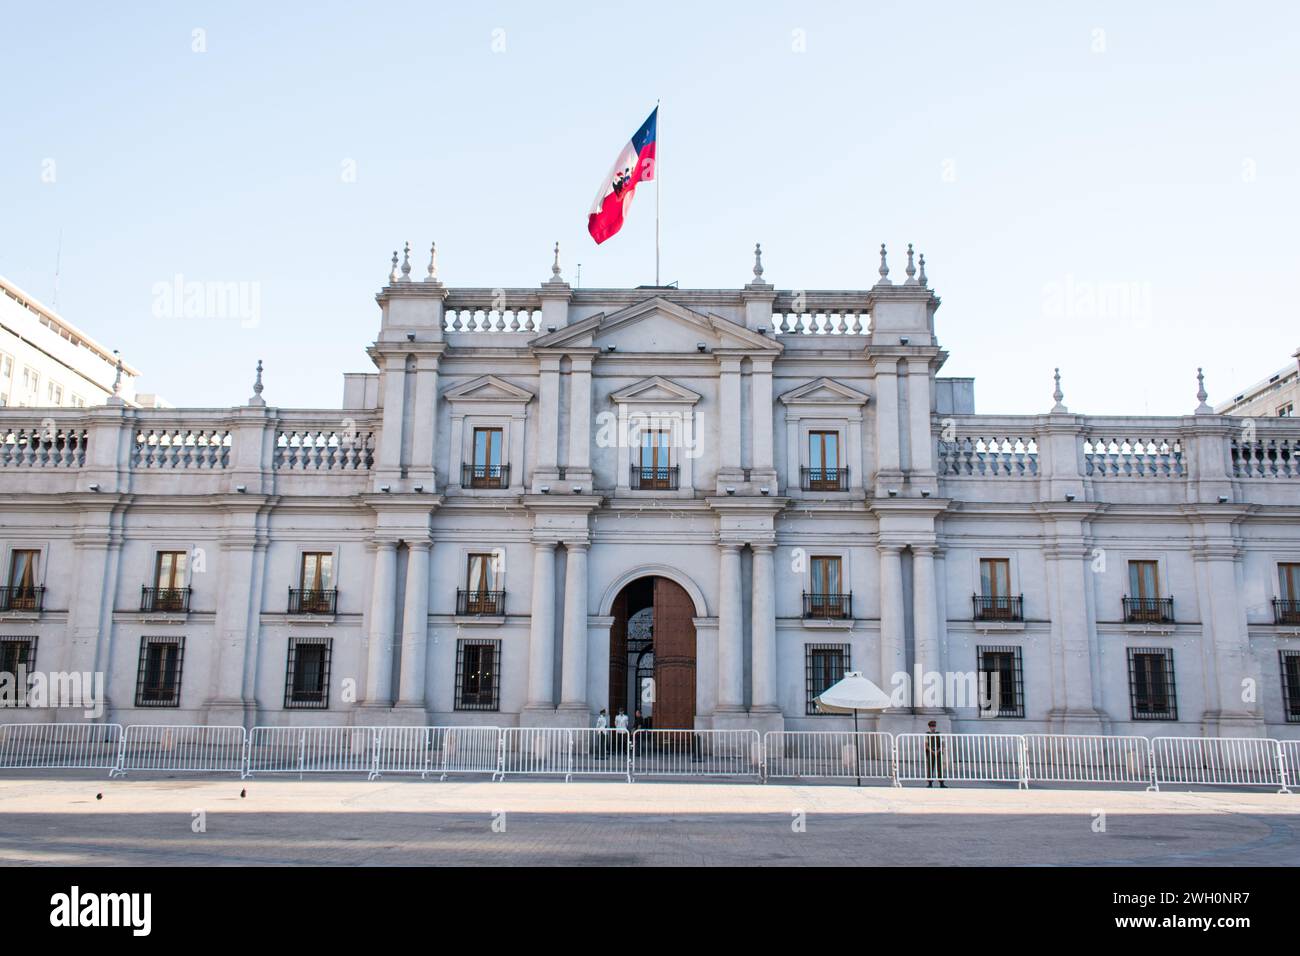 Façade of Palacio de La Moneda or La Moneda, the presidential palace located in downtown Santiago. Stock Photo